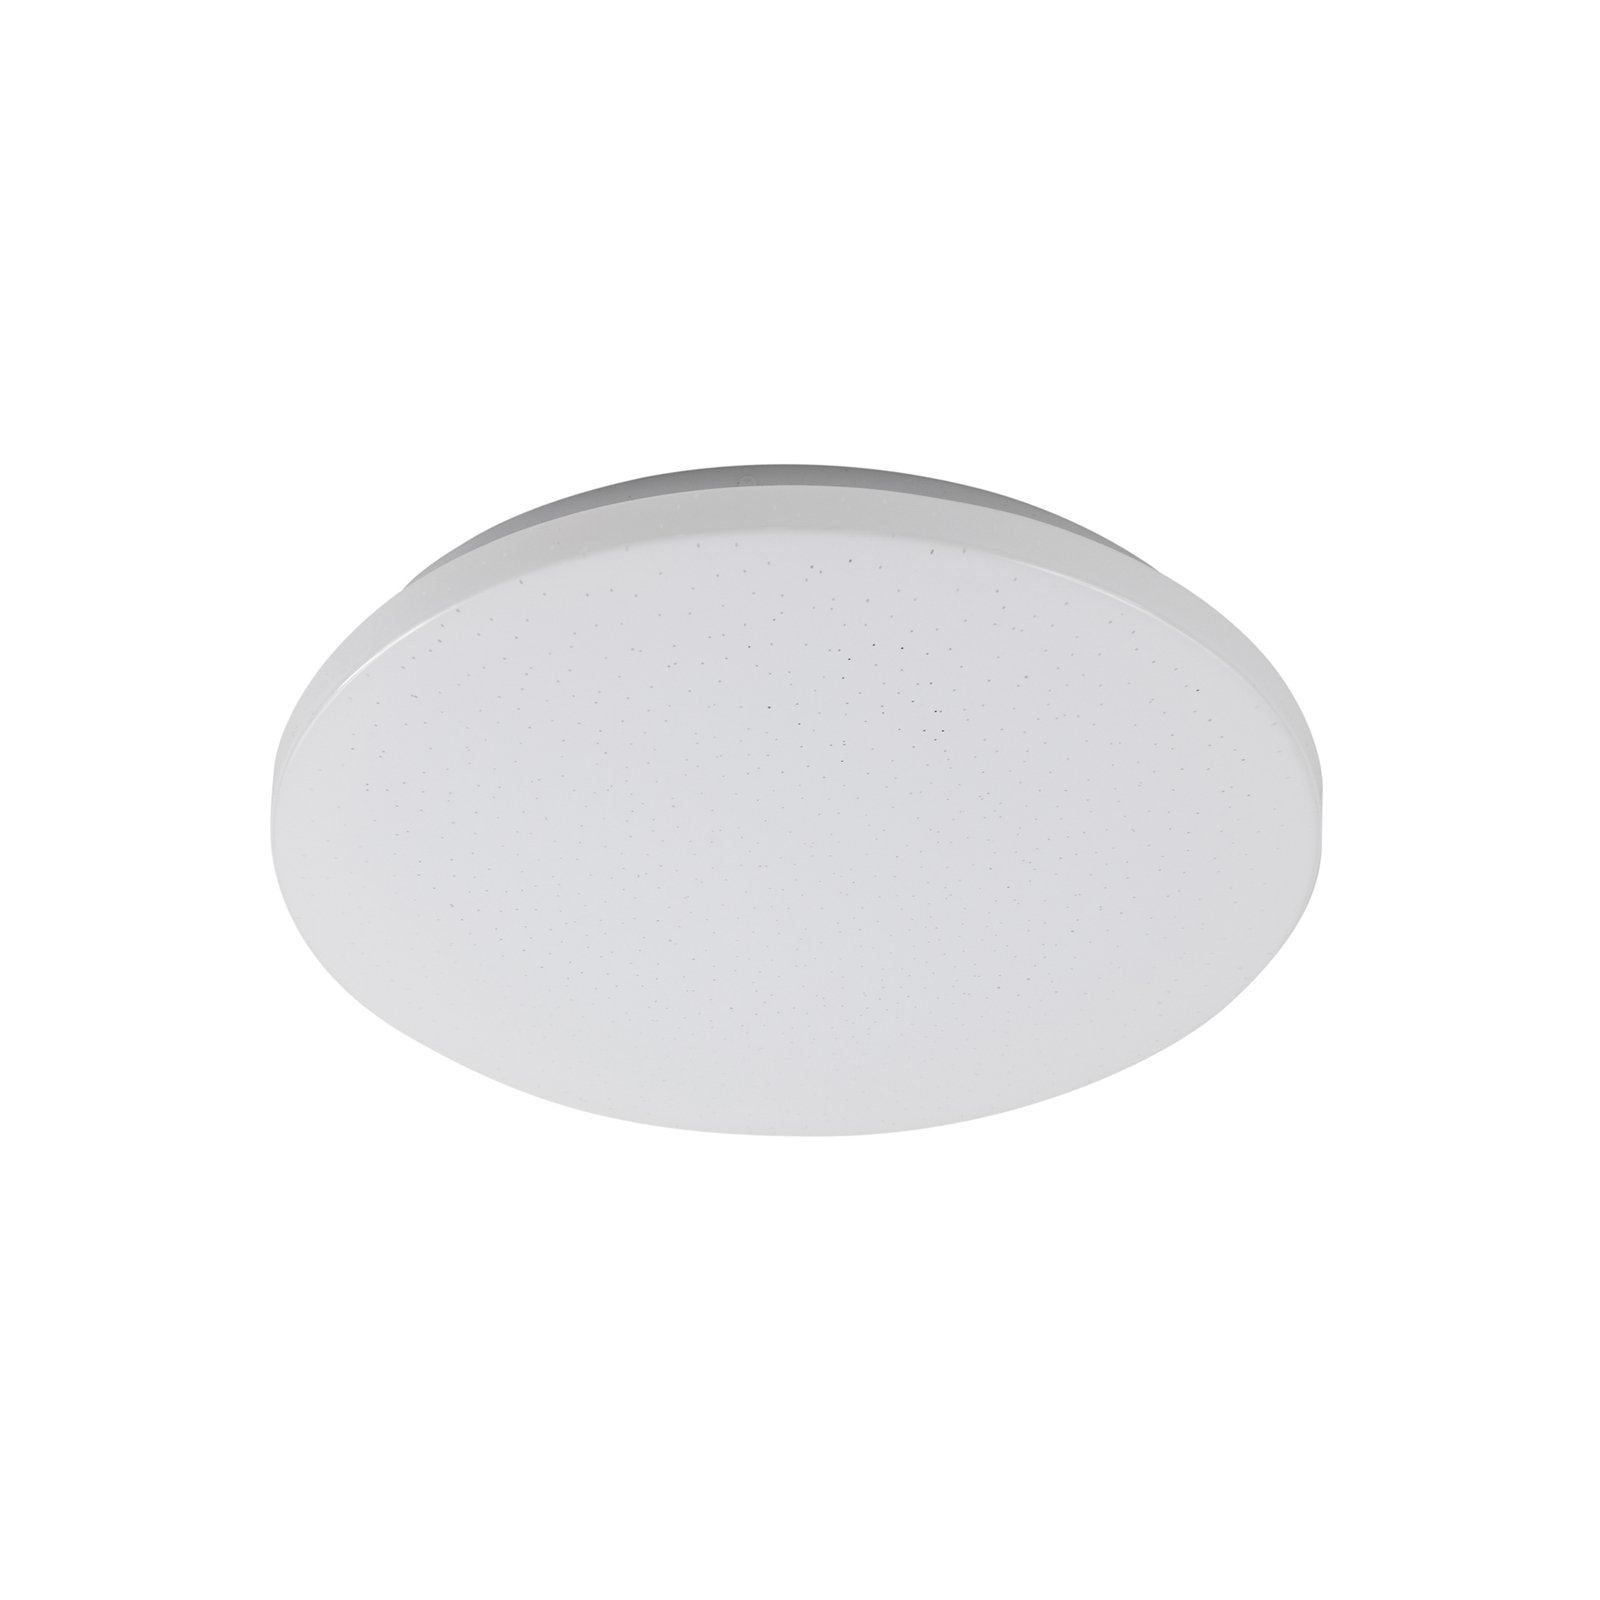 Lindby LED buiten plafondlamp Astera, wit, 3.000 K, Ø 33 cm